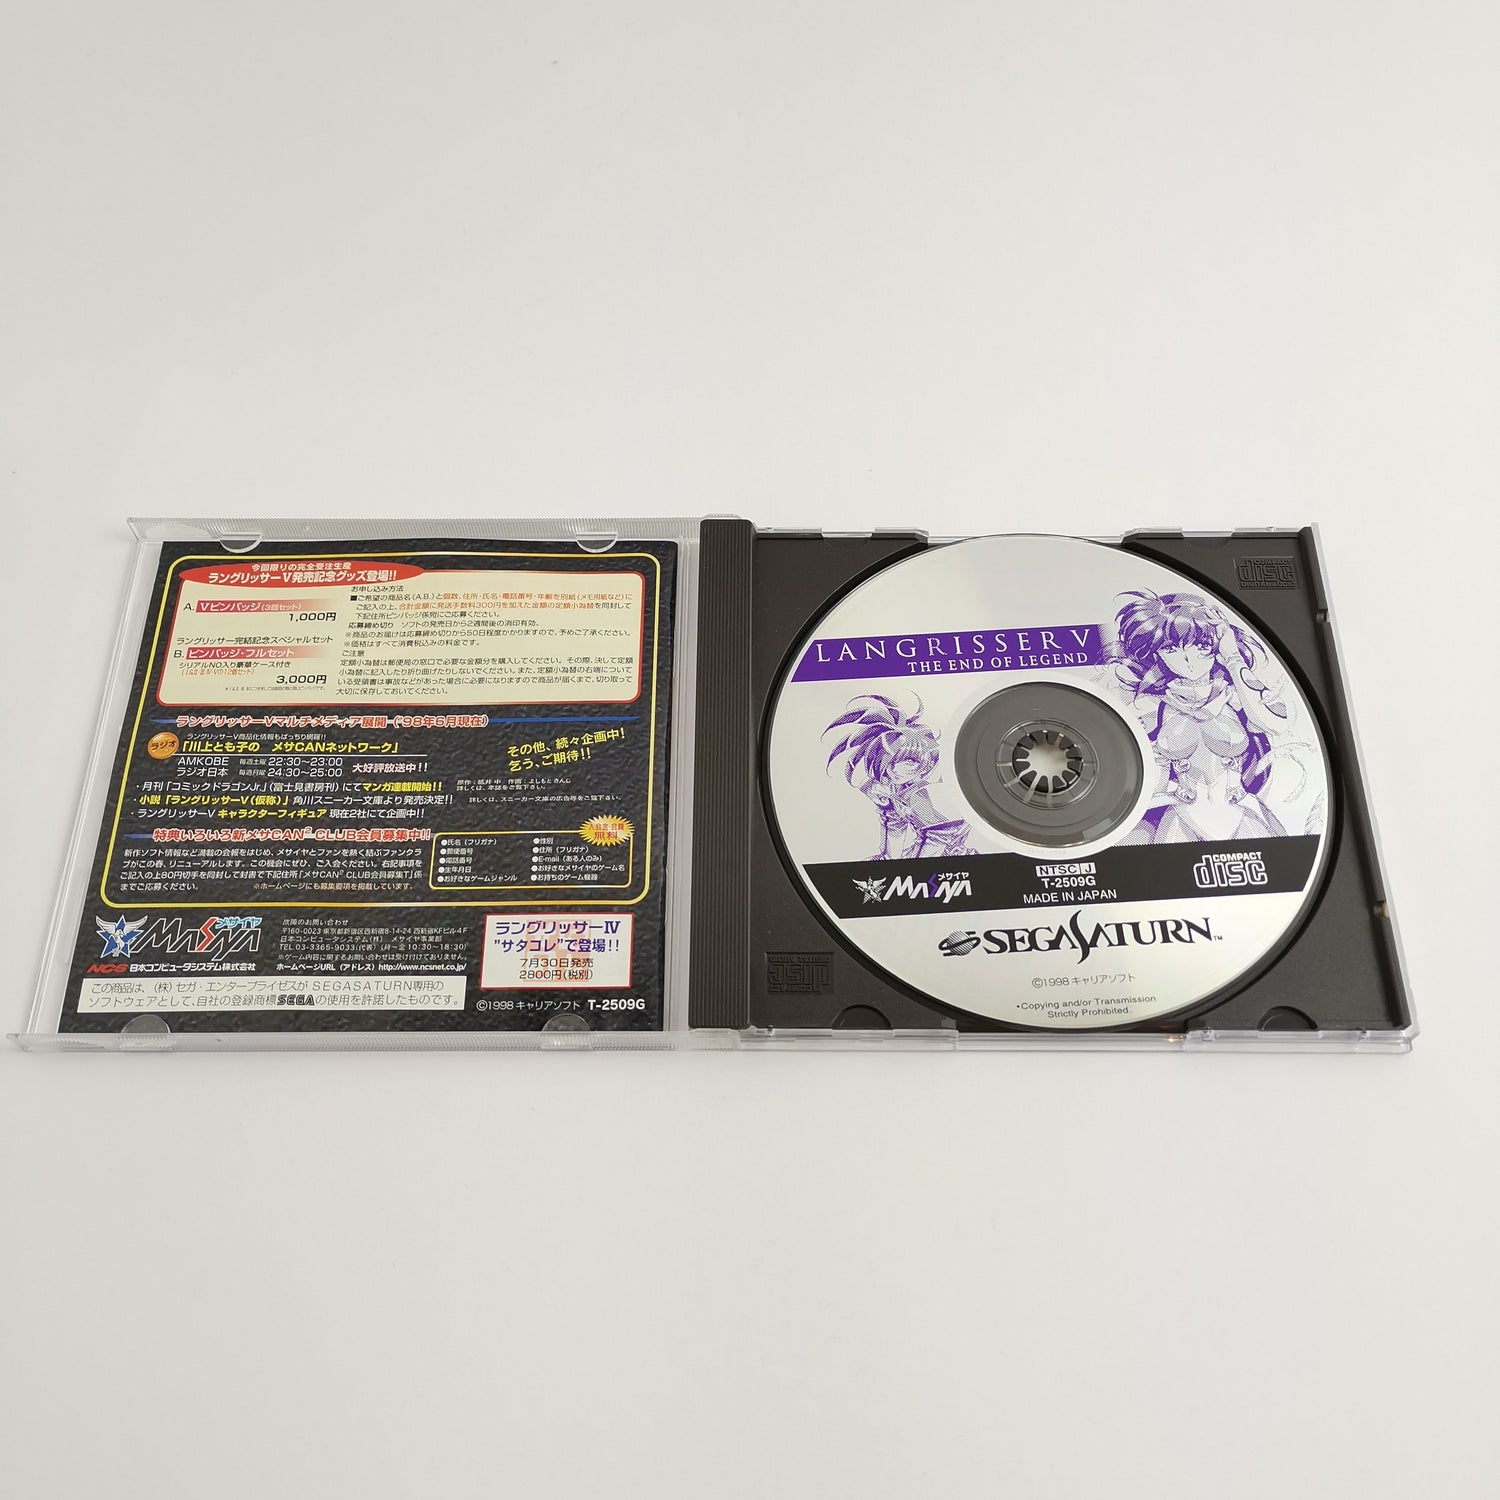 Sega Saturn Game: Langrisser V 5 The End of Legend | NTSC-J JAPAN - original packaging